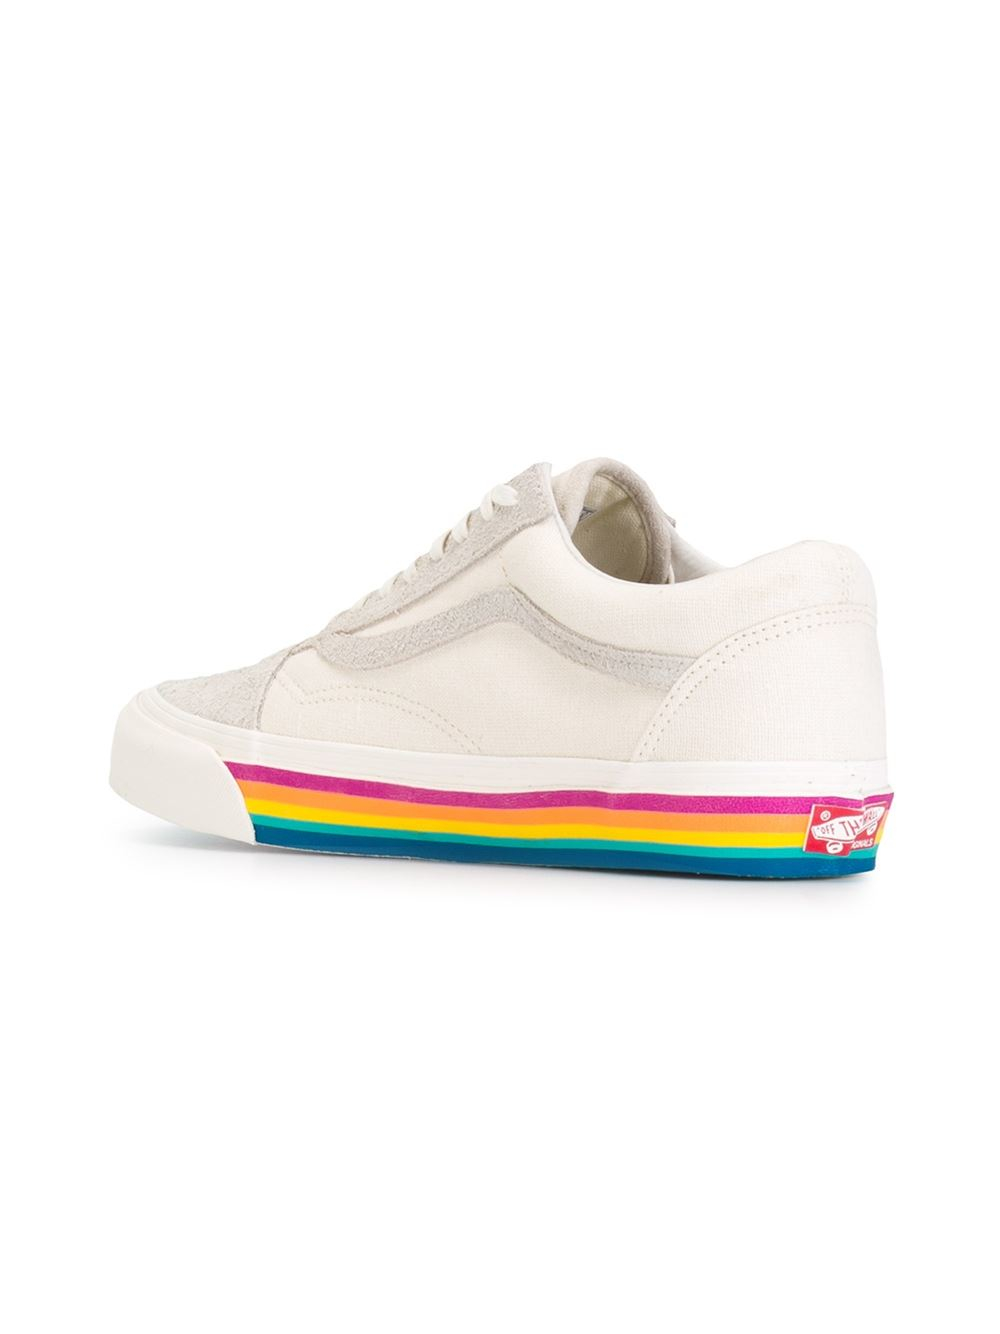 vans shoes rainbow sole